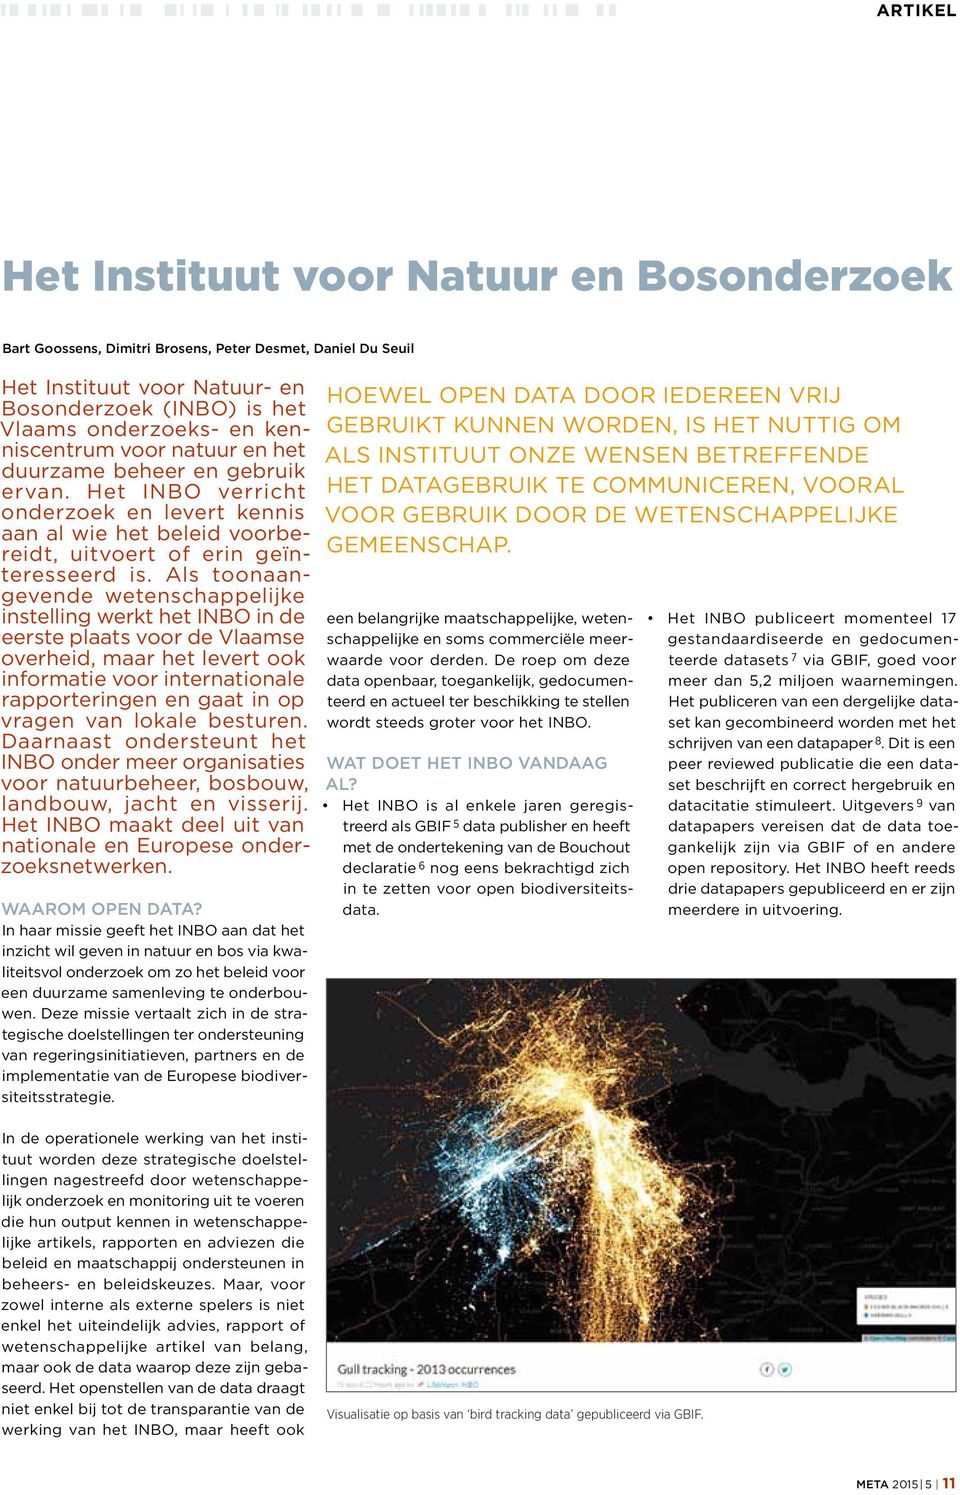 Als toonaangevende wetenschappelijke instelling werkt het INBO in de eerste plaats voor de Vlaamse overheid, maar het levert ook informatie voor internationale rapporteringen en gaat in op vragen van